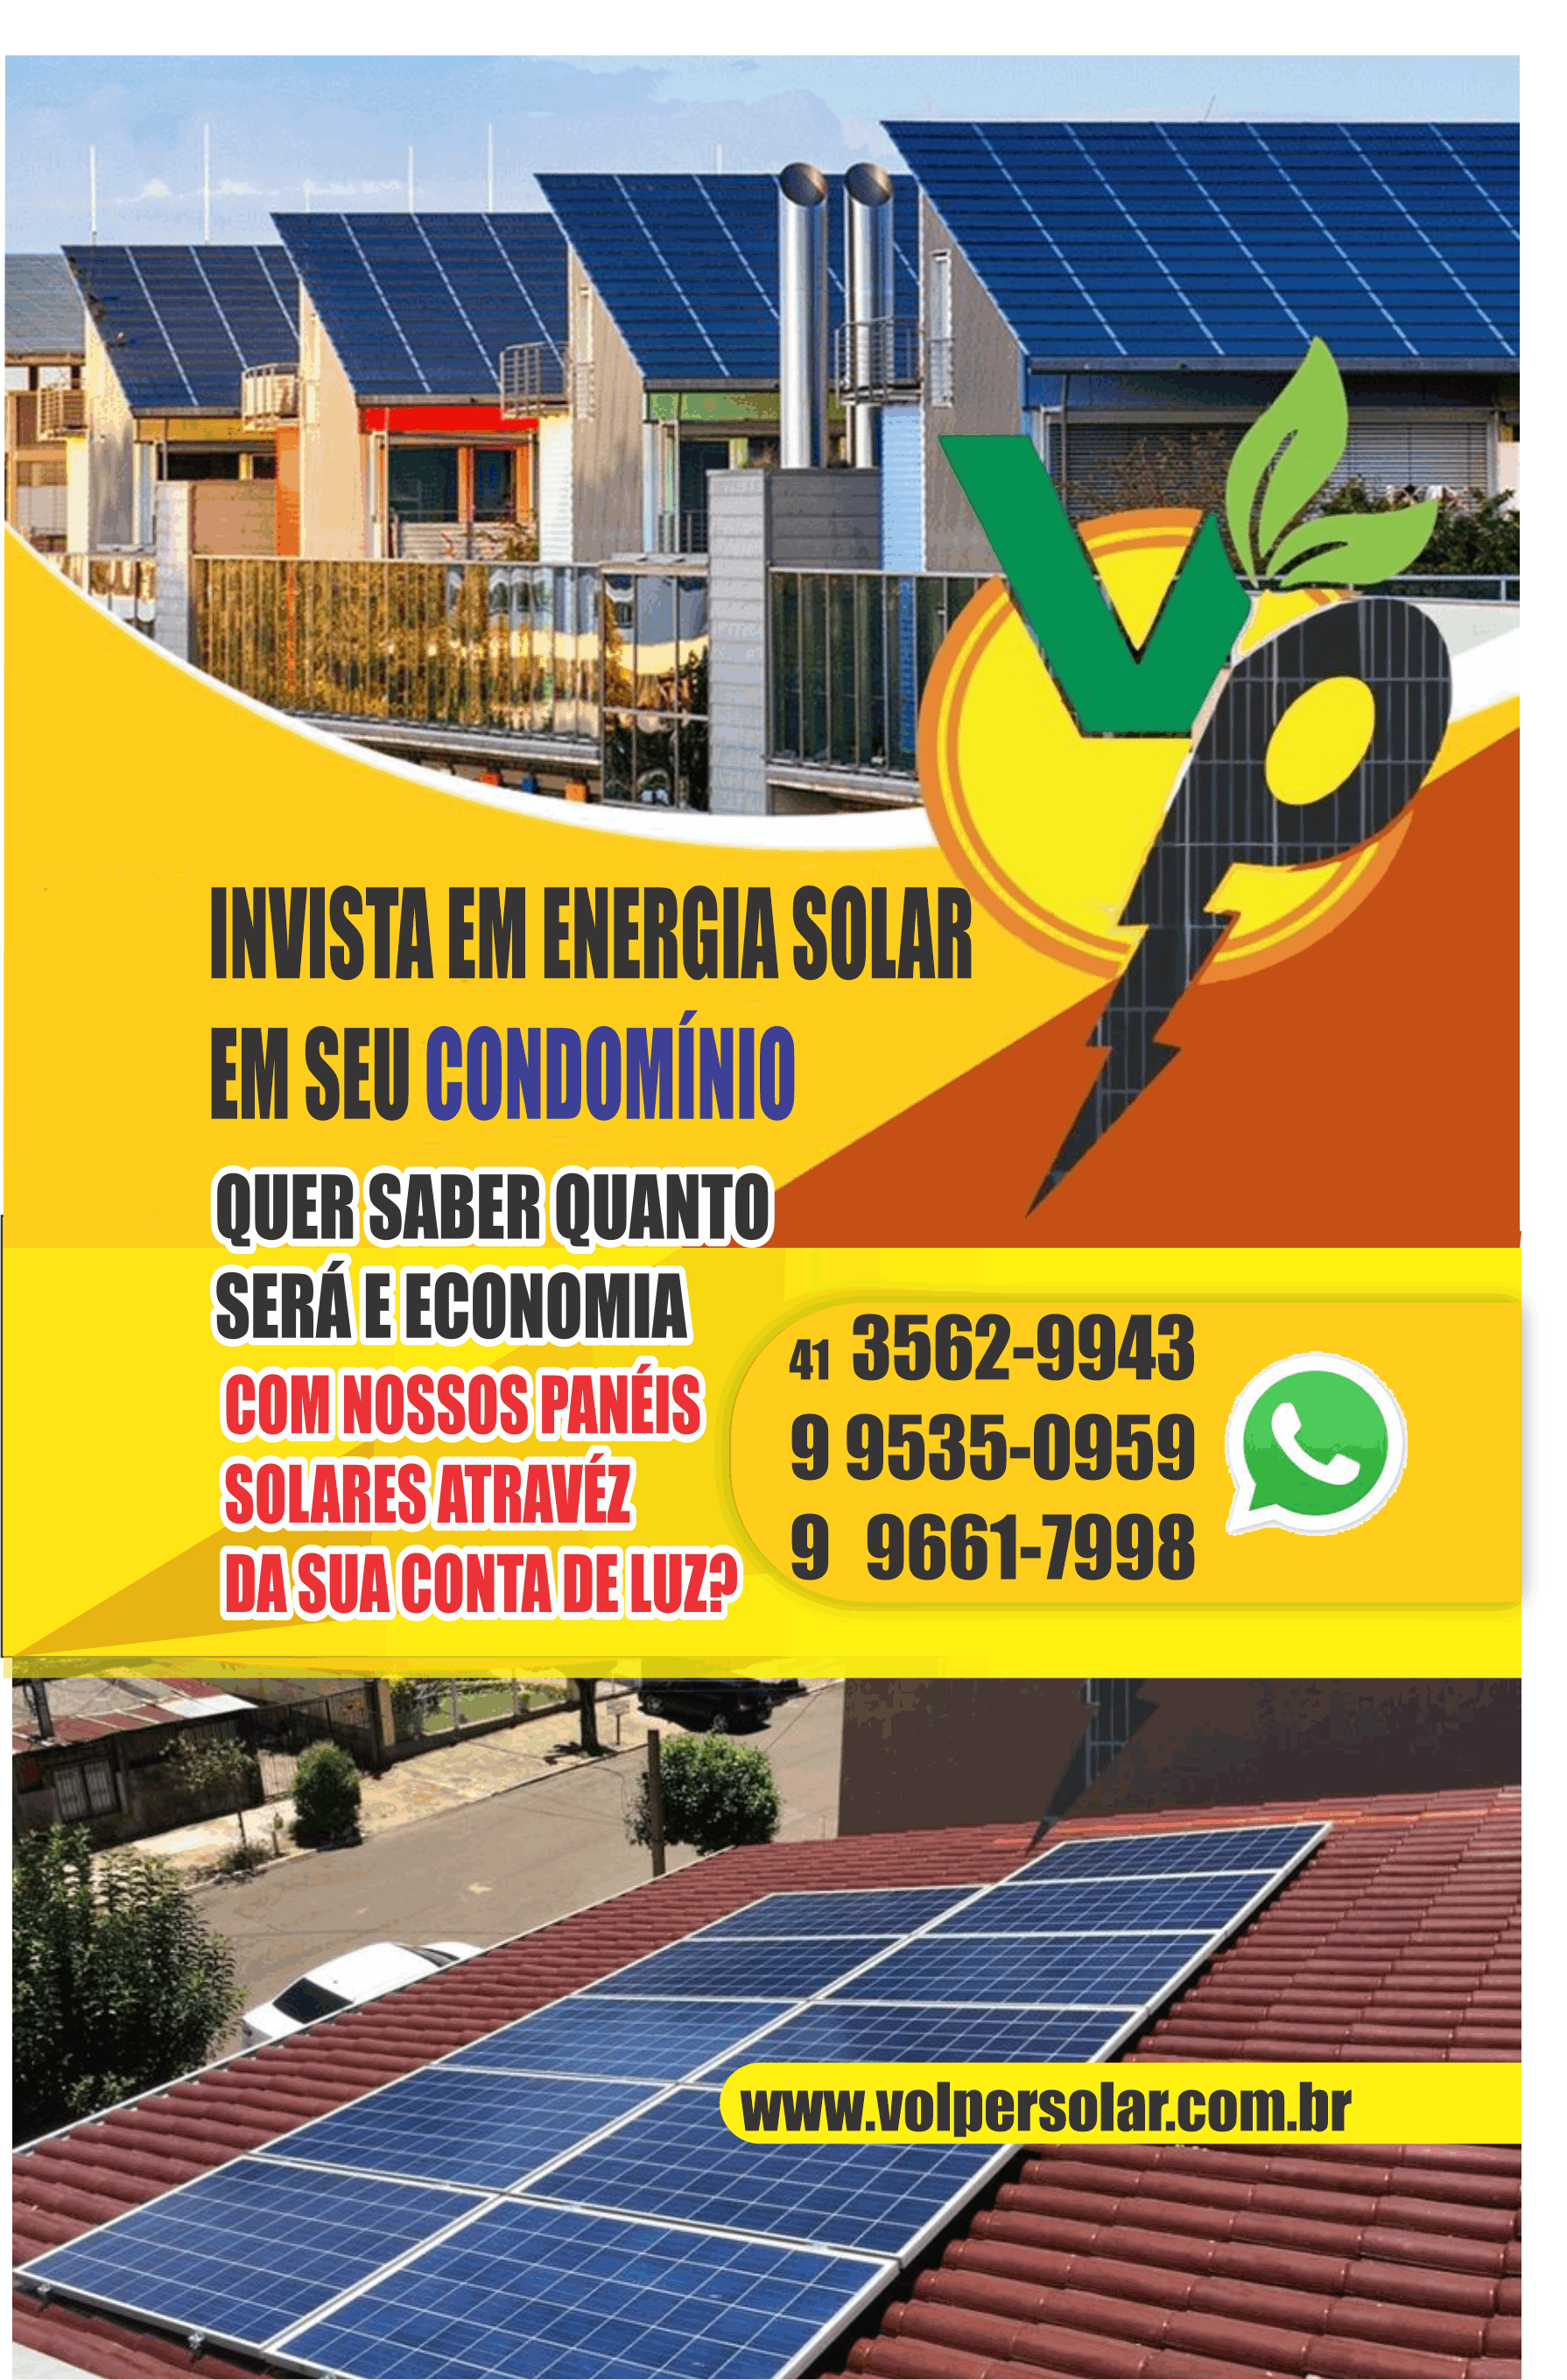 Volper Solar Energia Solar      RUA HUXLEY, 19, COLOMBO - PR  Fones: (41) 99535-0959 / (41) 99661-7998